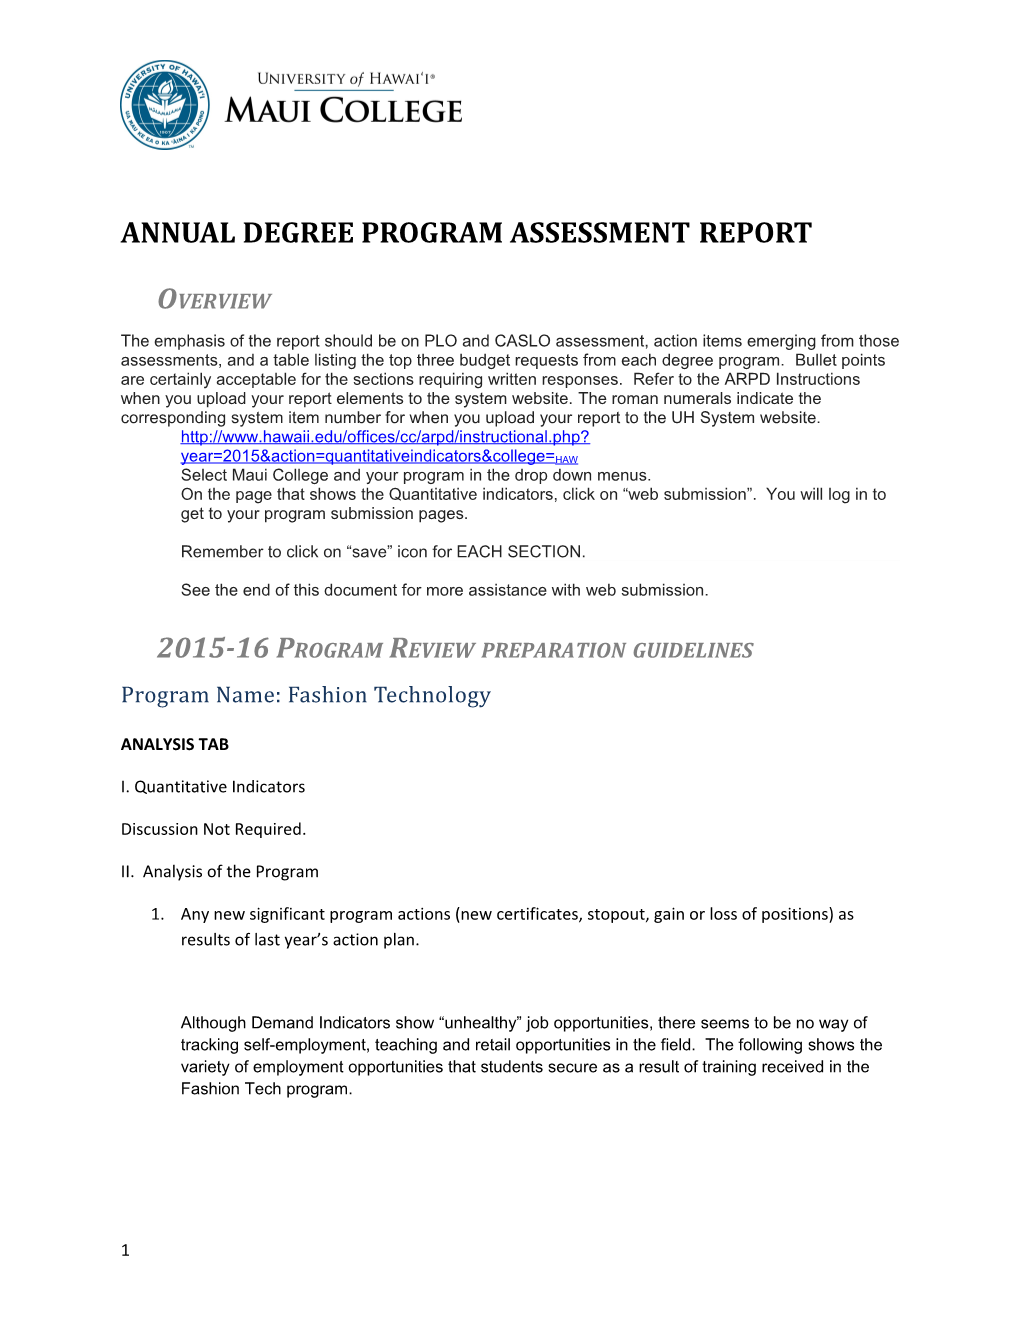 Annual Degree Program Assessment Report s1